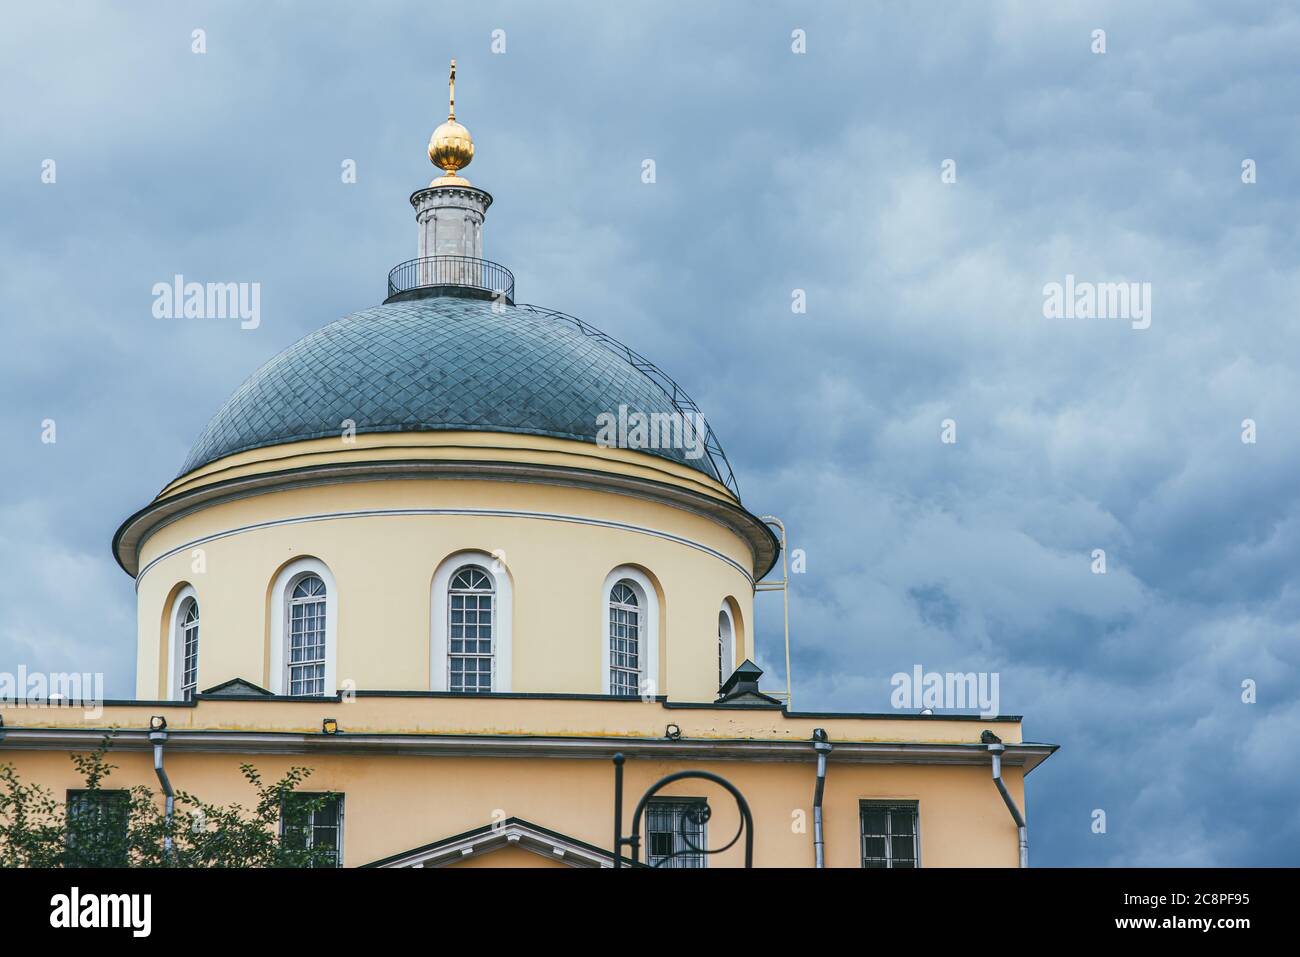 Una cupola verde con finestre ad arco allungate sormontata da una cupola dorata contro un cielo tempestoso. Capitale dell'Impero russo Mosca Foto Stock